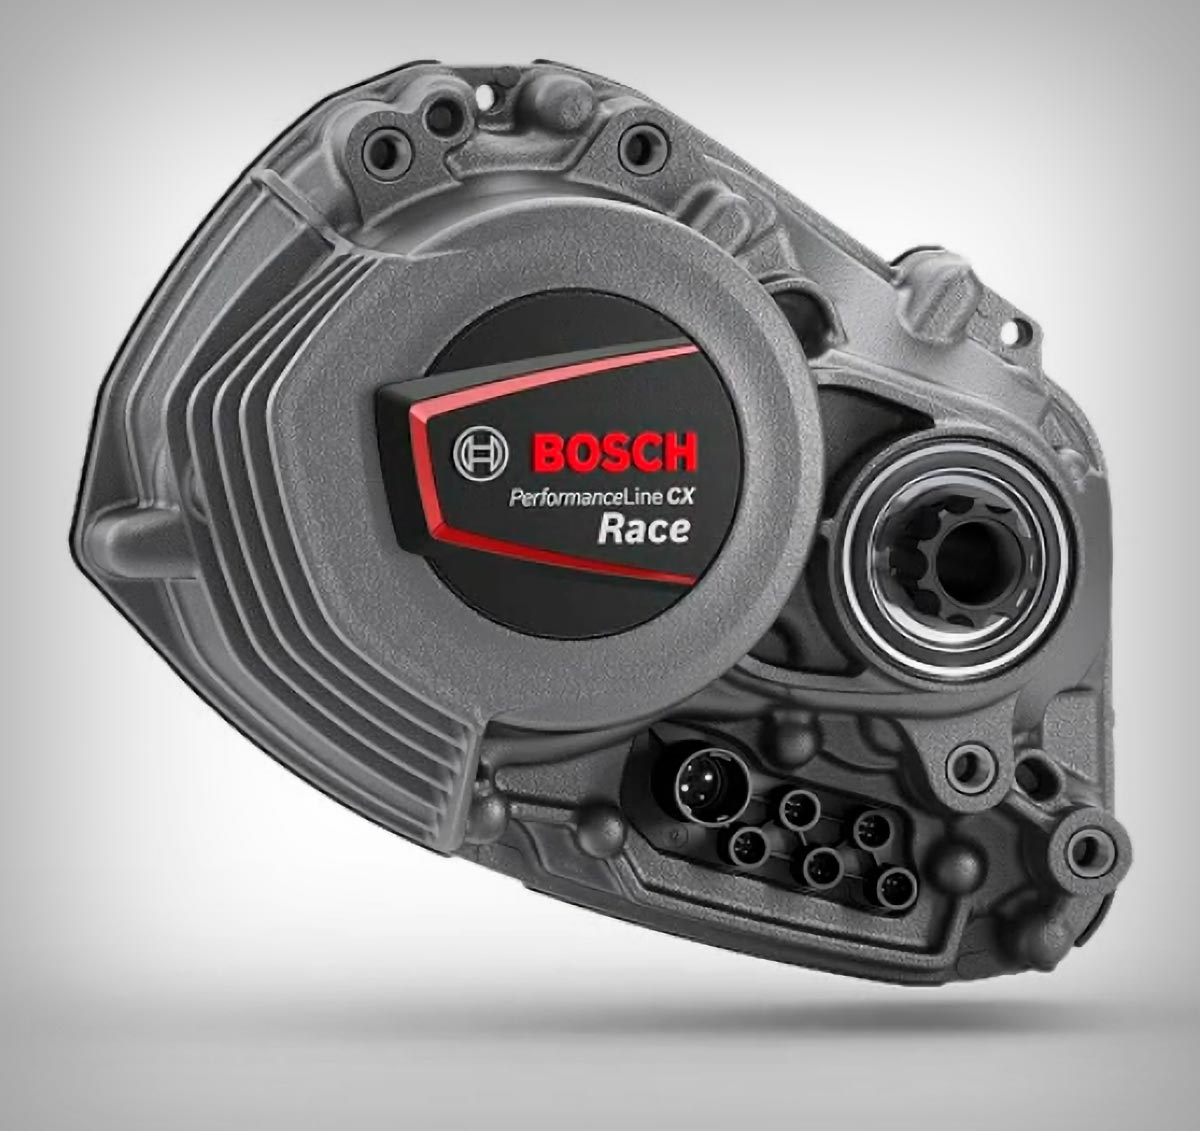 Bosch Performance Line CX Race Limited Edition, un motor con asistencia hasta el 400%